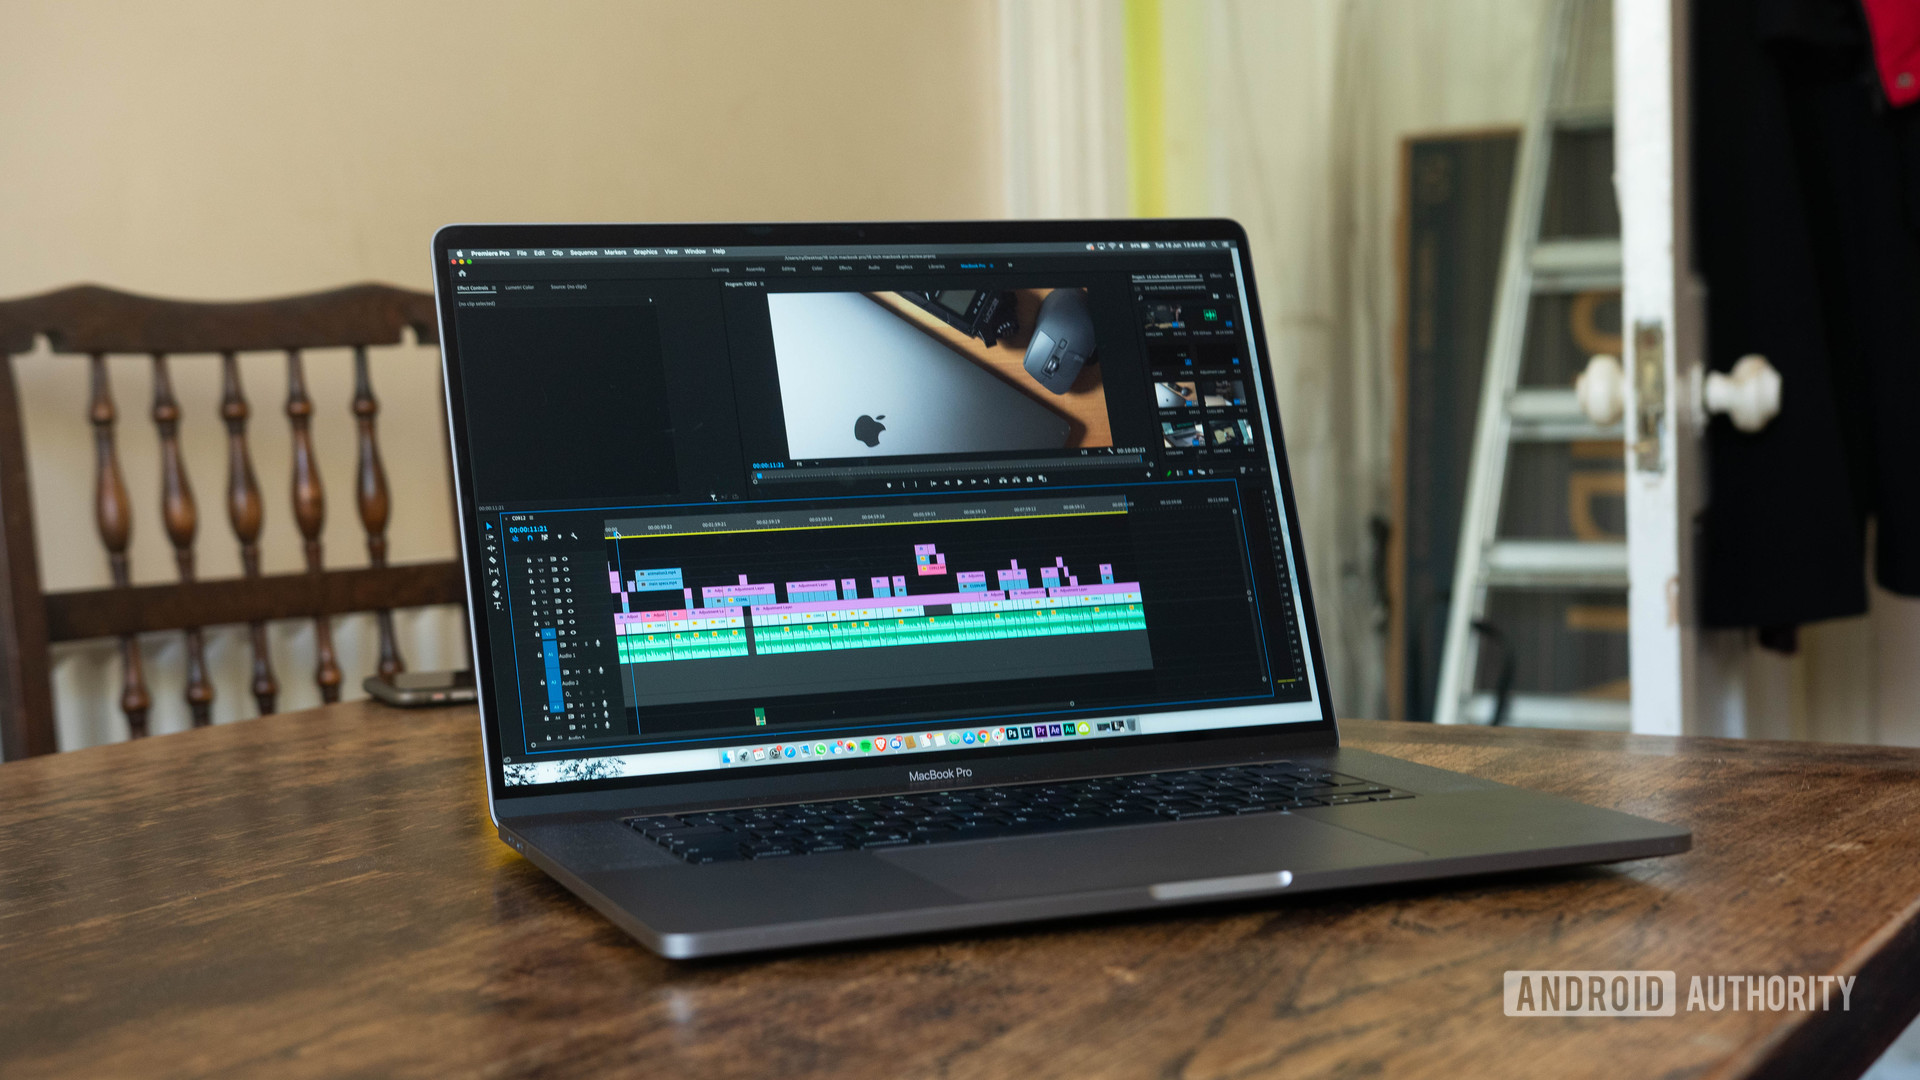 16 inch MacBook Pro Premiere Pro open